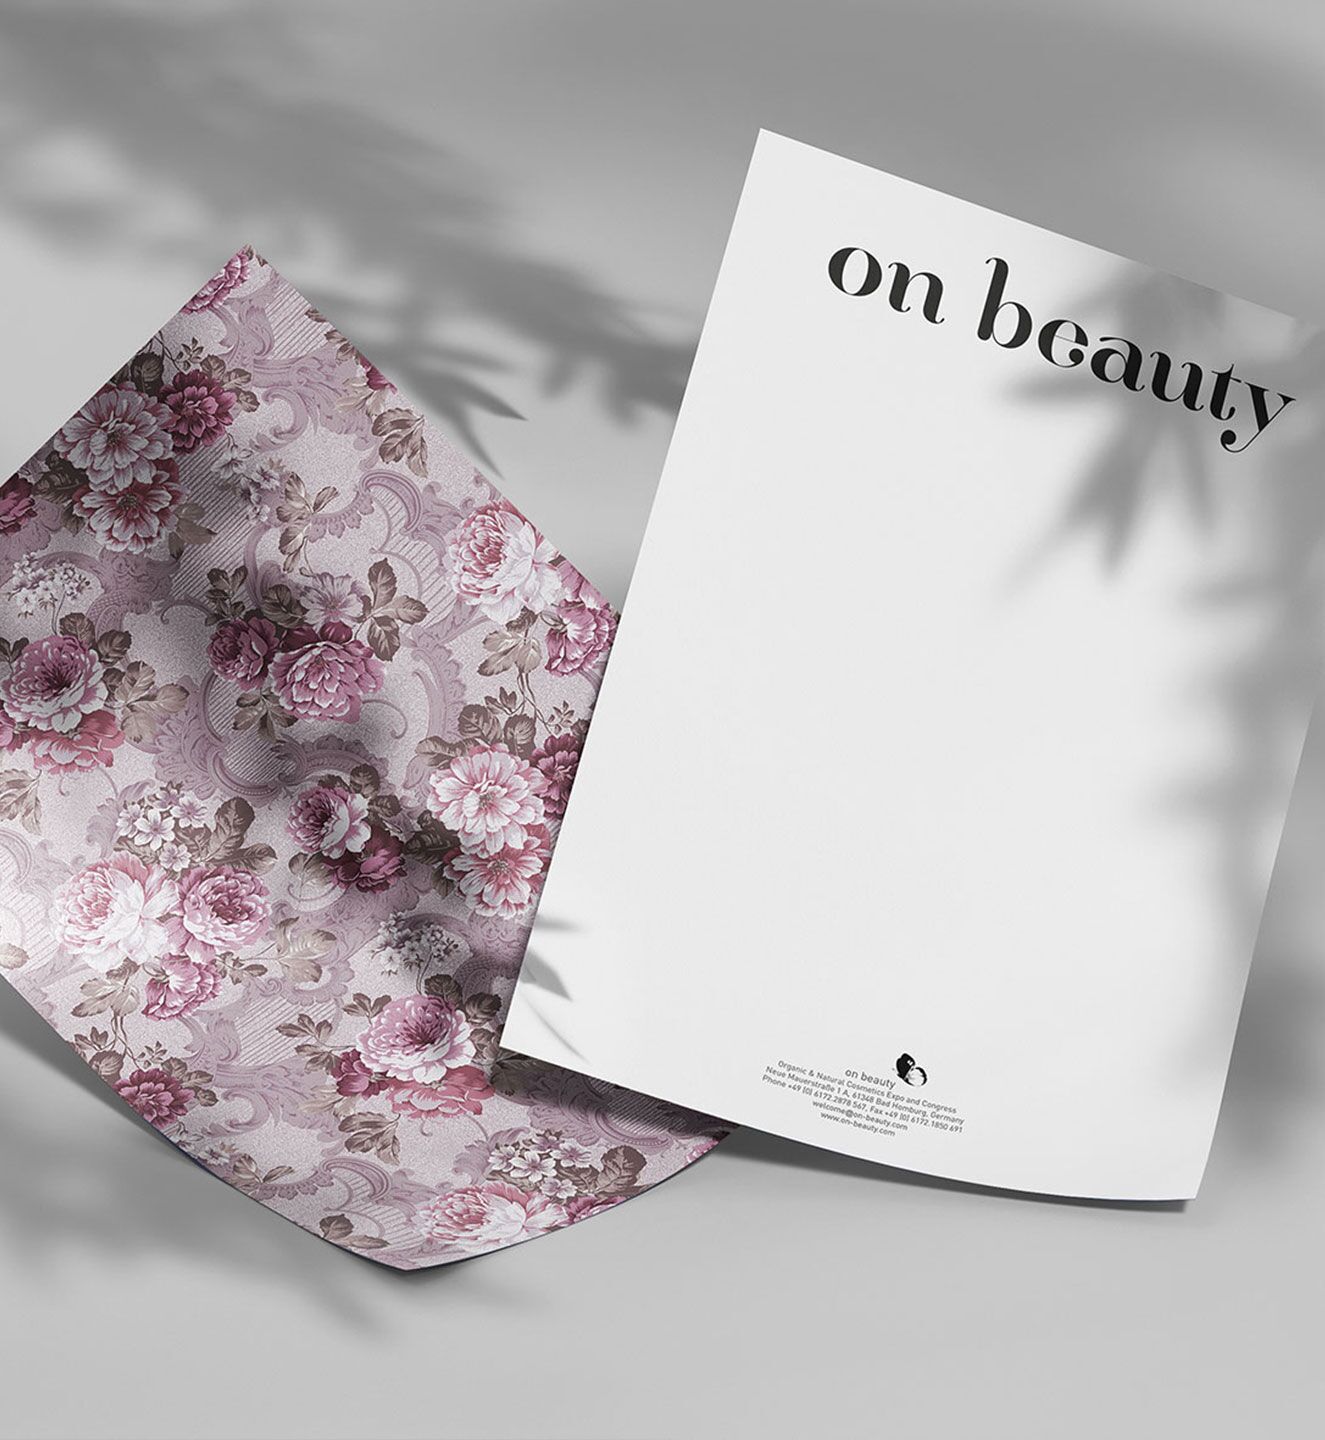 On Beauty - Projekt der Internetagentur NO TINS Gmbh